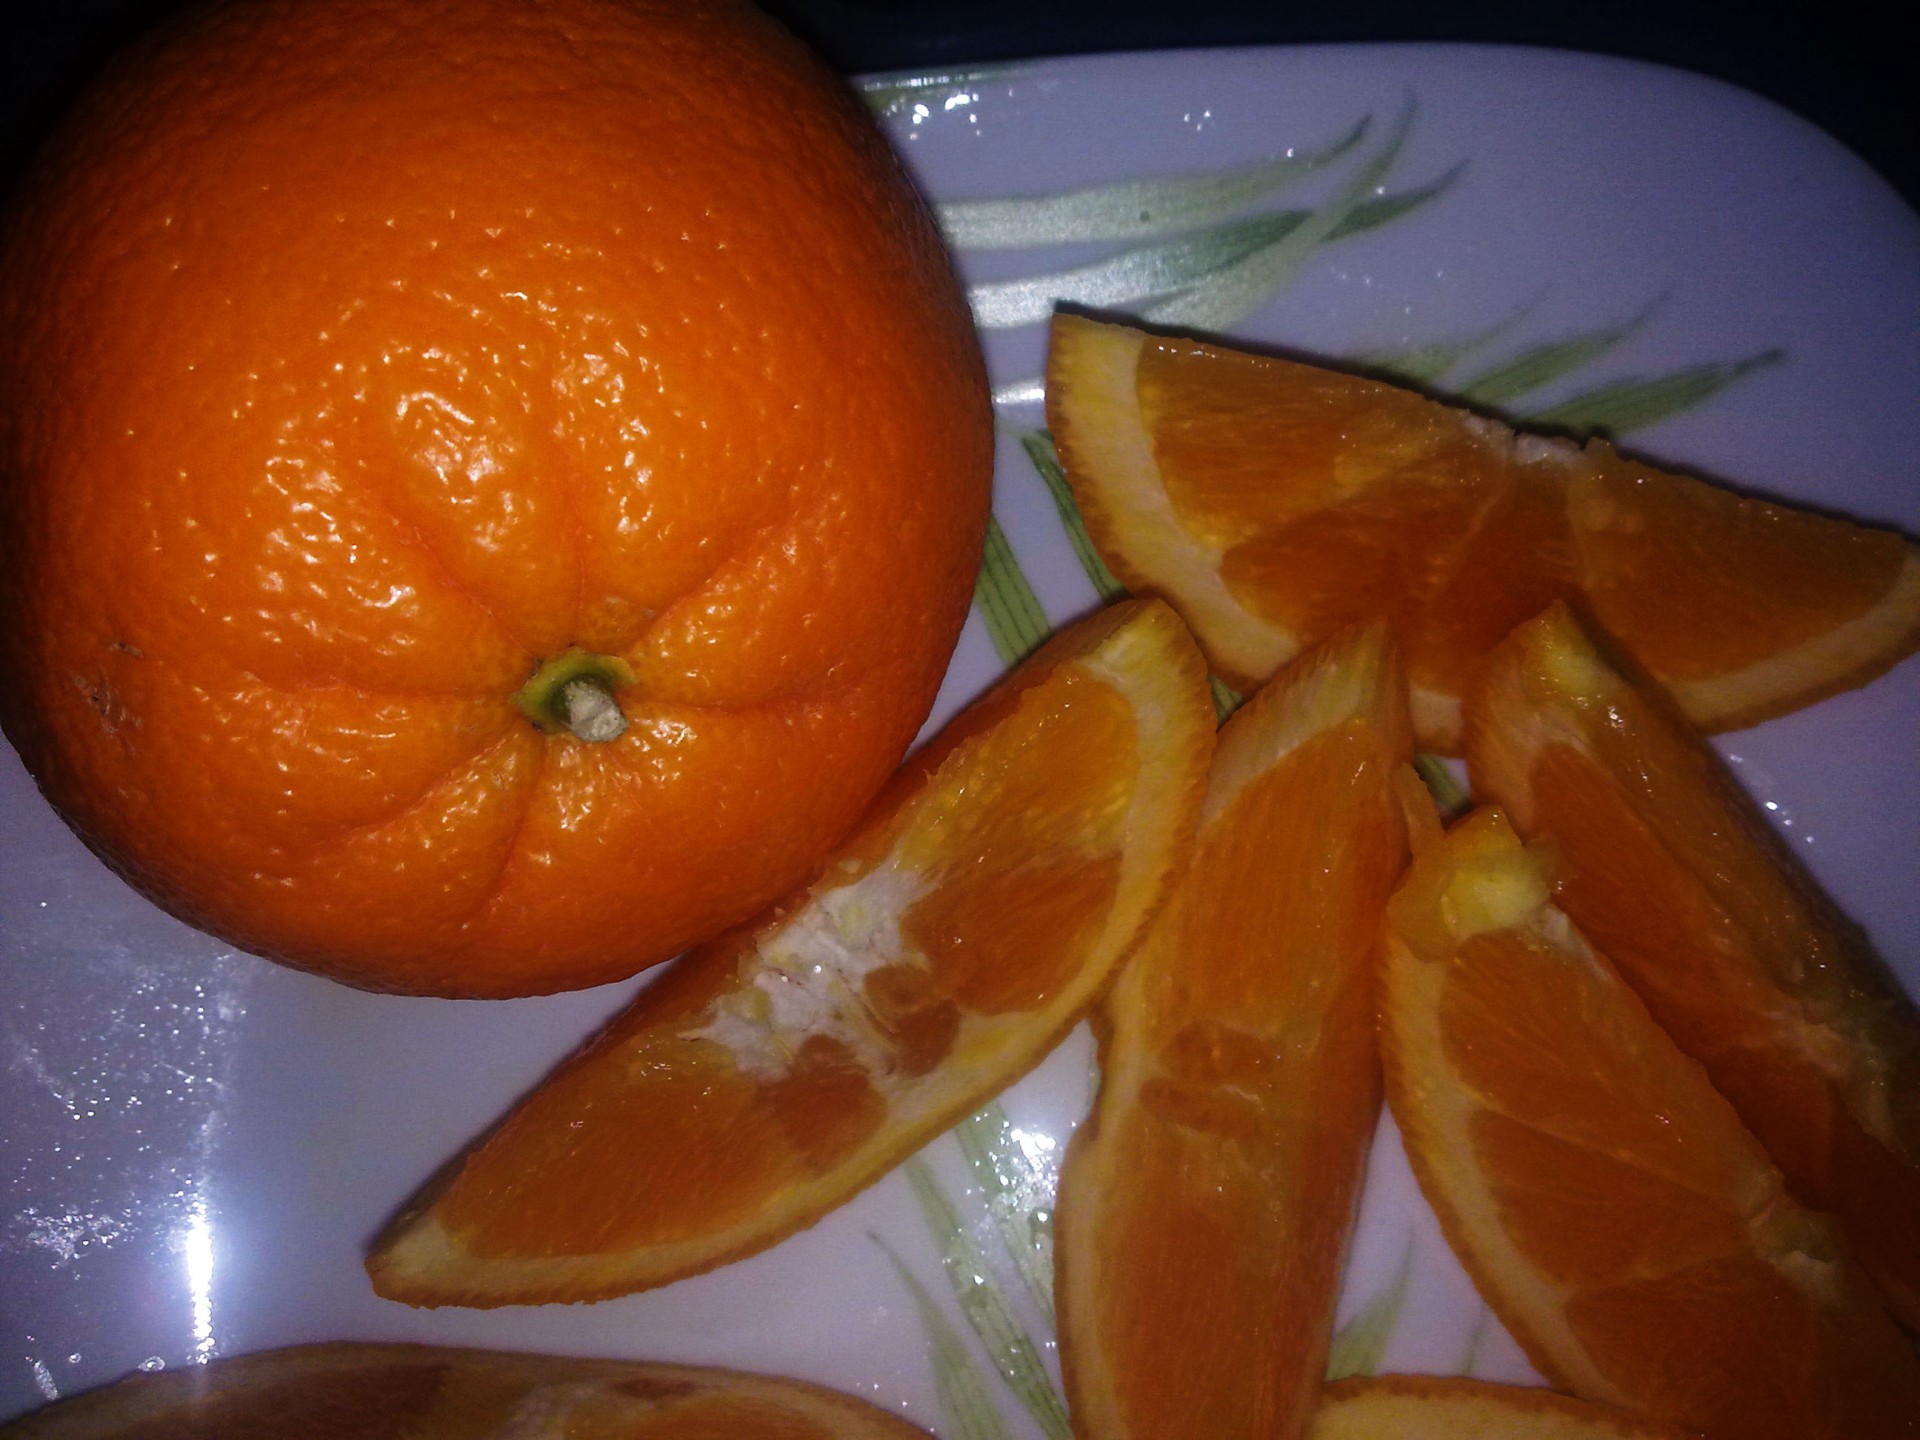 orange fruit oranges free photo